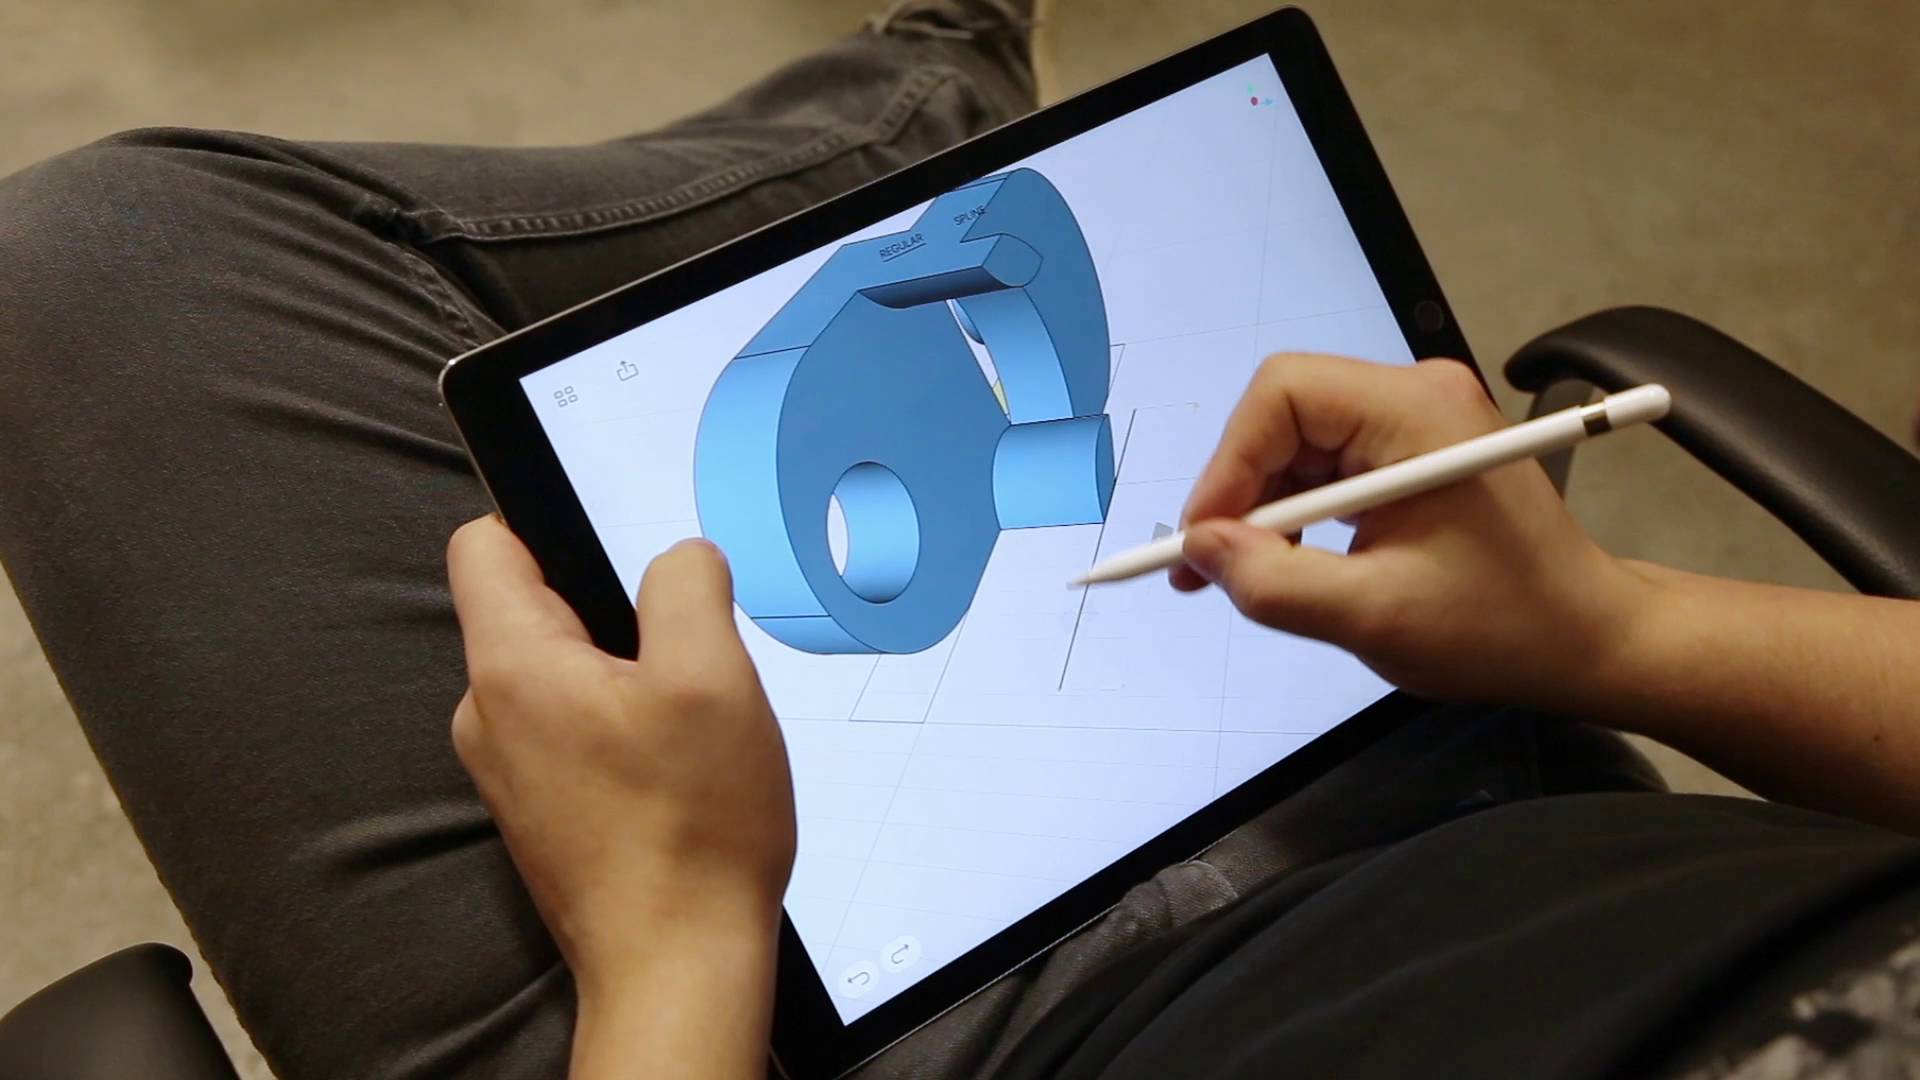 Shapr3D trên iPad là một ứng dụng 3D kết hợp trực quan với tính năng thiết kế mạnh mẽ nhưng lại dễ sử dụng. Bạn có thể dễ dàng tạo ra các bản vẽ 3D chính xác chỉ bằng cách sờ, di chuyển và vẽ trực tiếp trên iPad. Shapr3D còn tích hợp trực tiếp với công nghệ in 3D để bạn có thể dễ dàng đưa những bản vẽ của mình từ thiết kế sang thực tế. Nếu bạn muốn biết thêm về Shapr3D trên iPad, hãy đón xem ảnh liên quan đến từ khóa này.